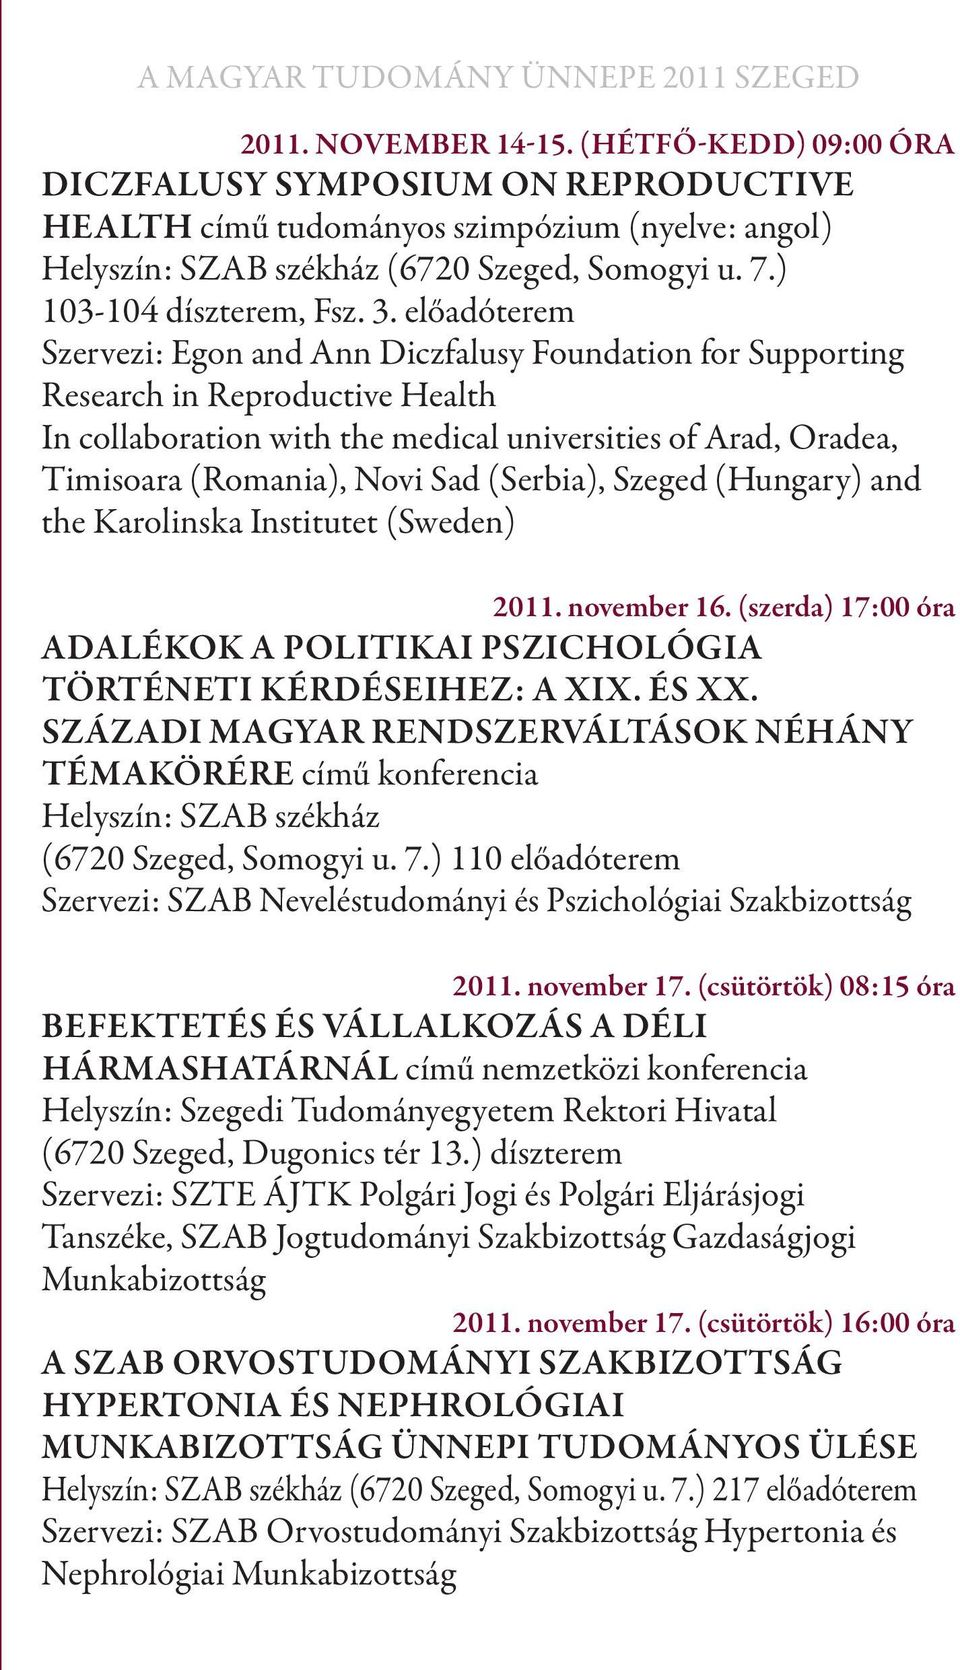 (Serbia), Szeged (Hungary) and the Karolinska Institutet (Sweden) 2011. november 16. (szerda) 17:00 óra Adalékok a politikai pszichológia történeti kérdéseihez: A XIX. és XX.